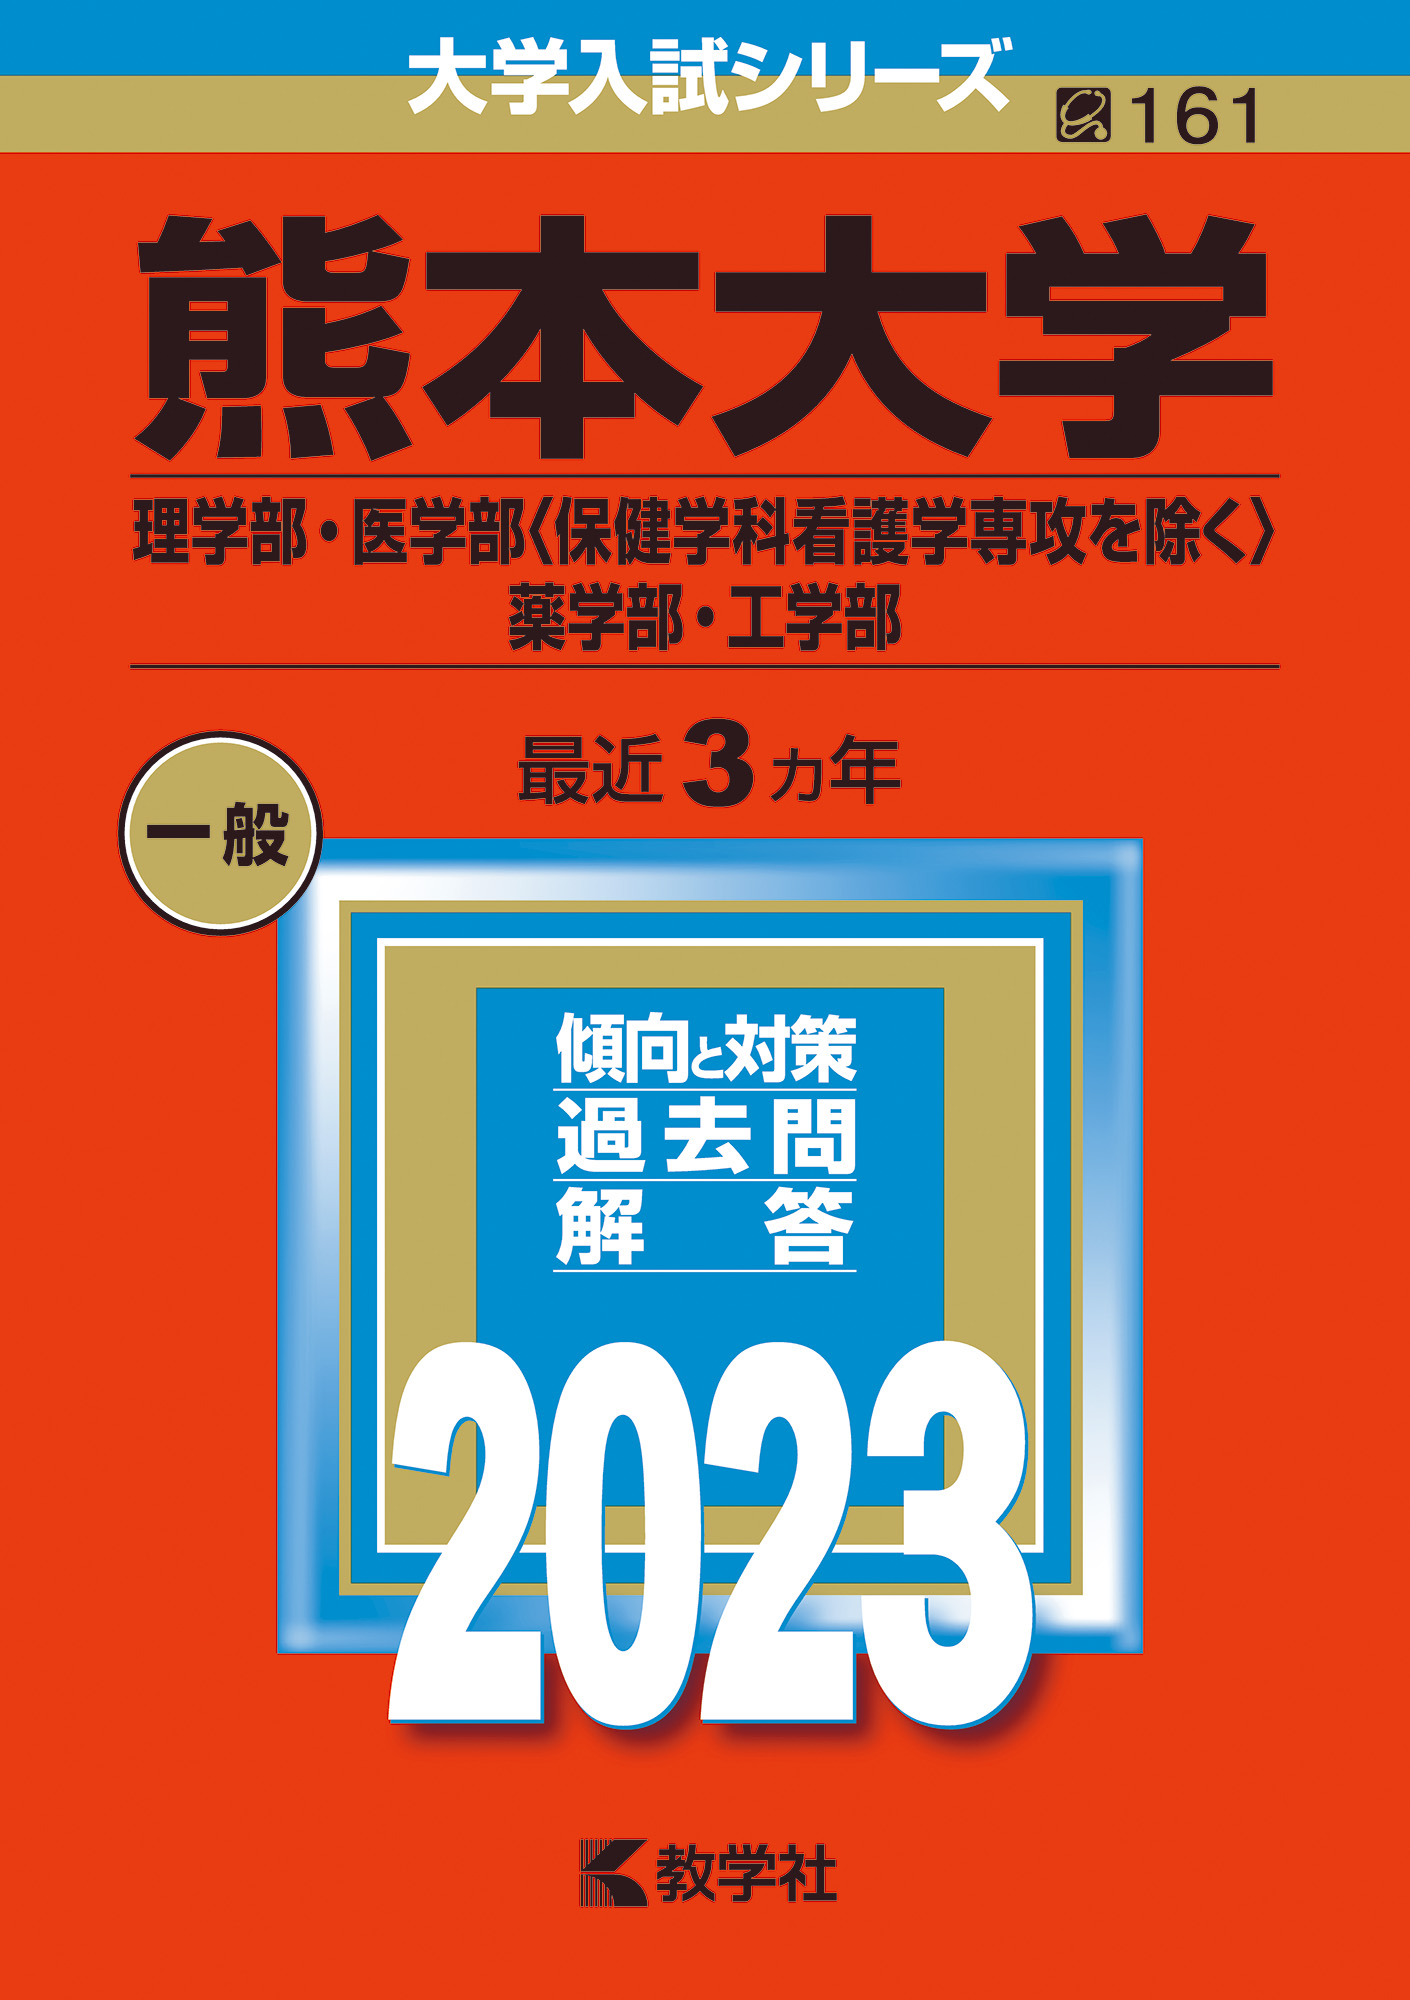 ☆赤本☆富山大学 理系 理・医・薬・工・都市デザイン2008〜2022年